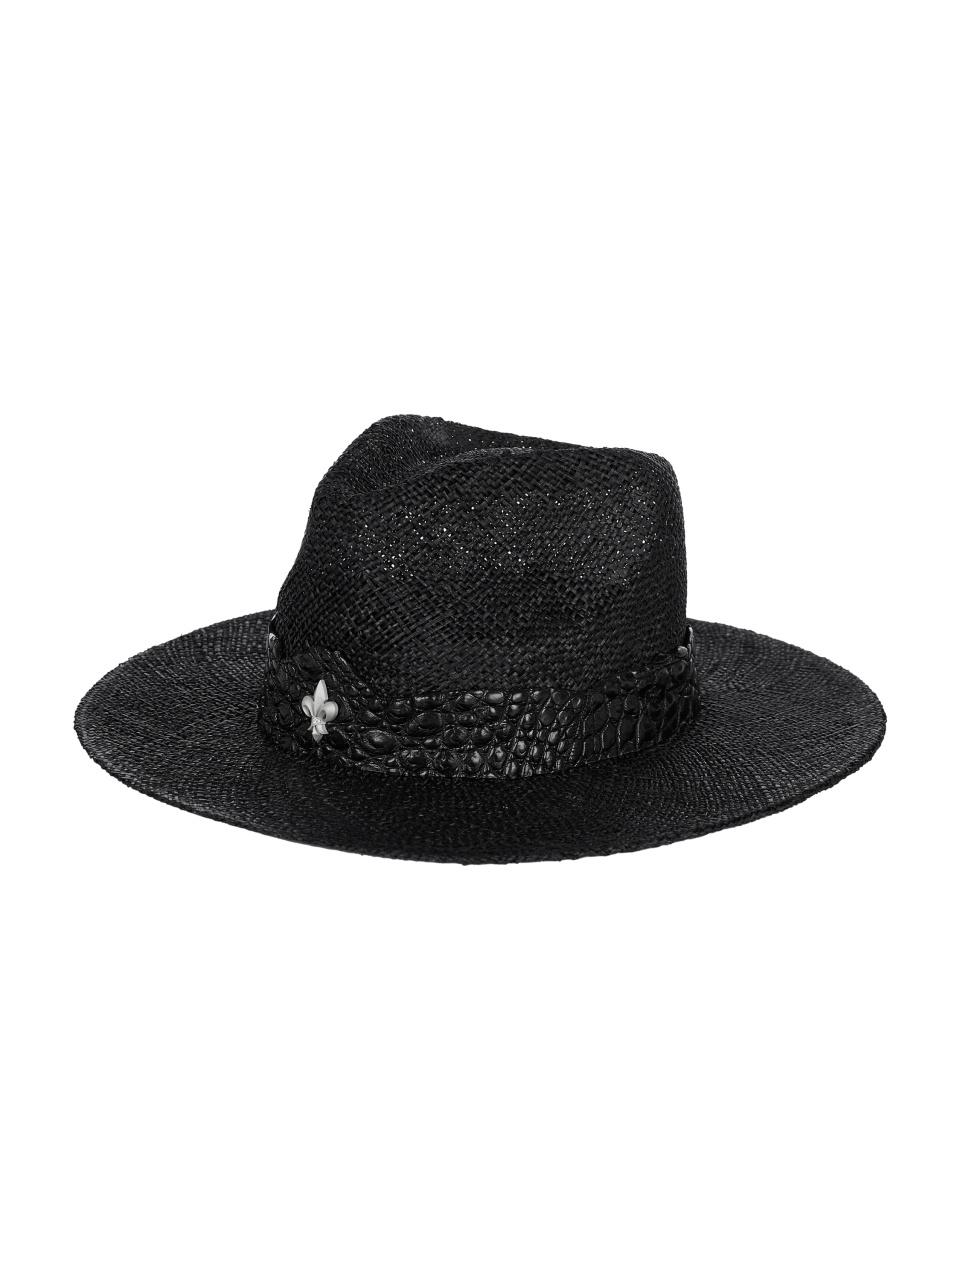 Черная соломенная шляпа с отделкой из кожи крокодила, 1